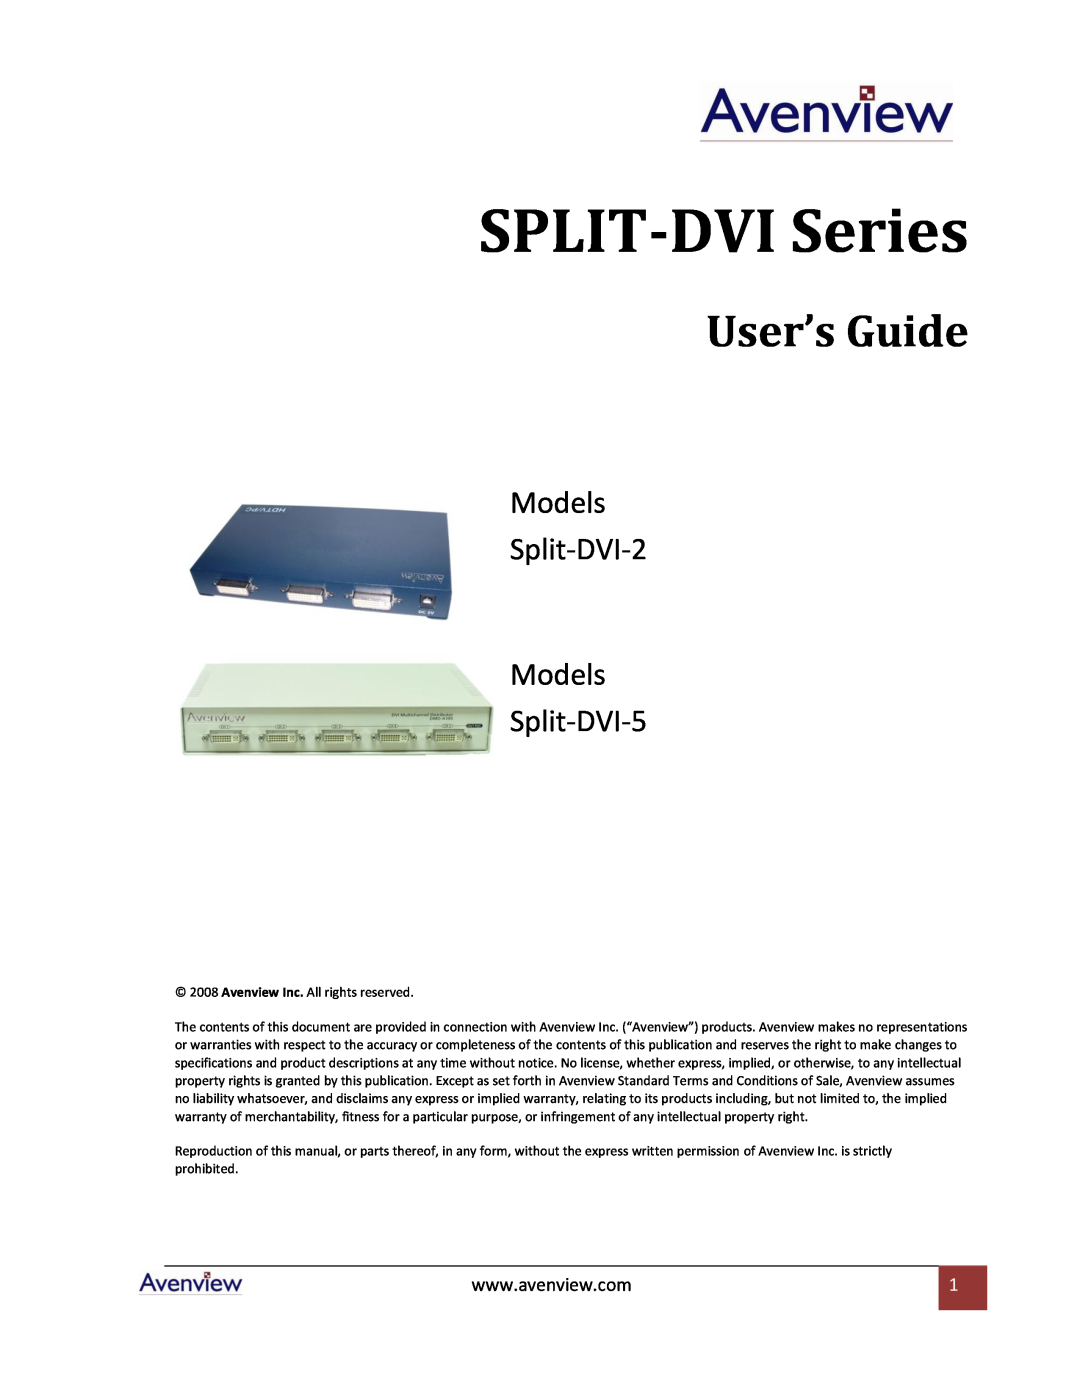 Avenview specifications Model # SPLIT-DVI-2, Port DVI Splitter 